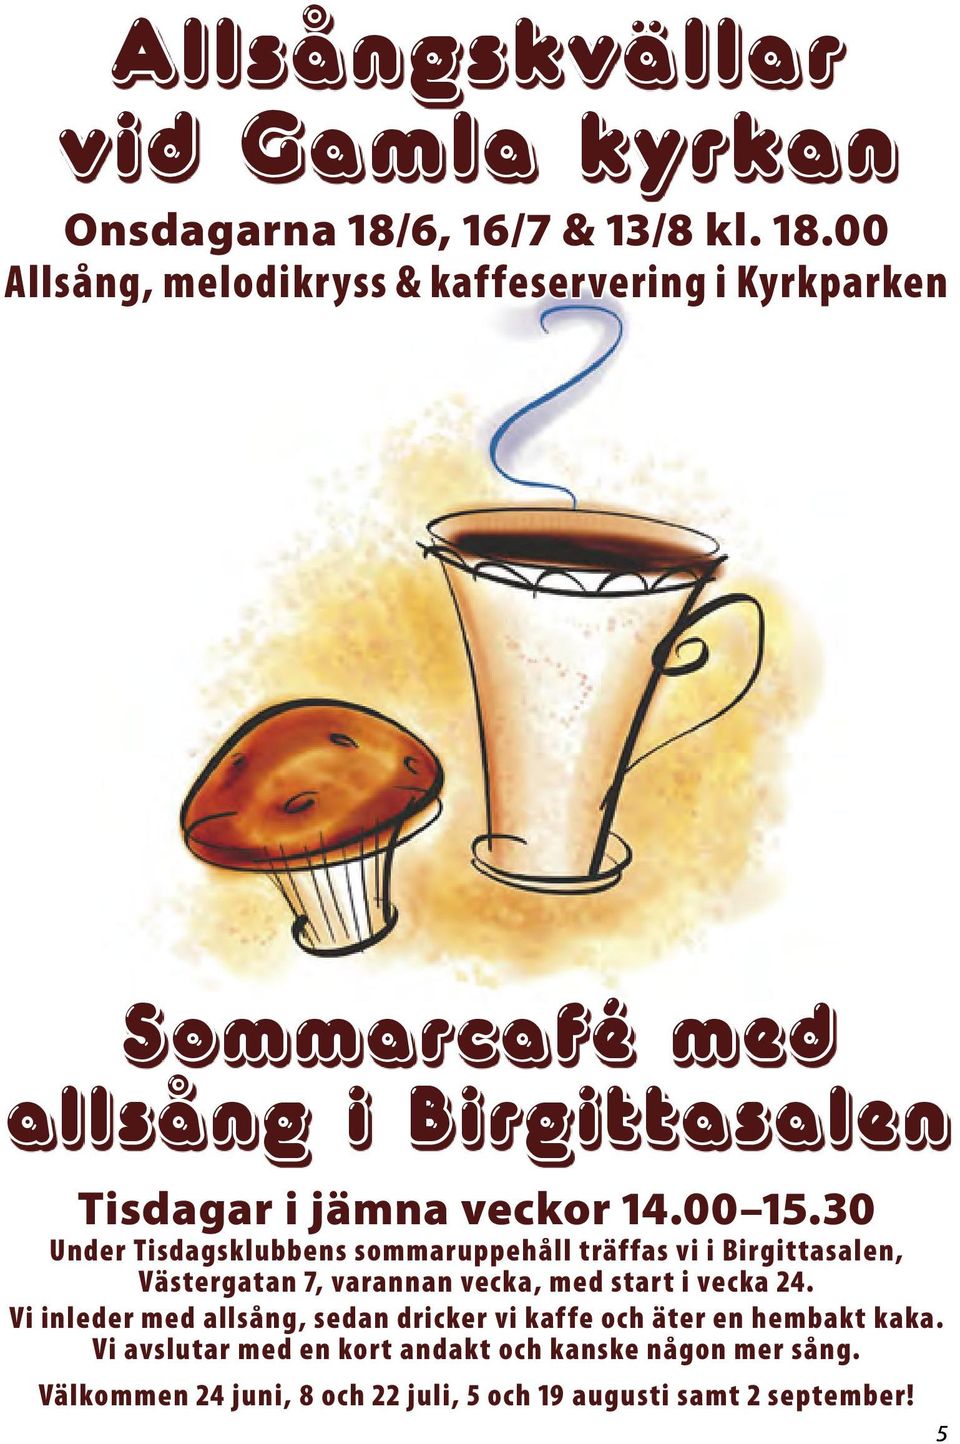 00 Allsång, melodikryss & kaffeservering i Kyrkparken Sommarcafé med allsång i Birgittasalen Tisdagar i jämna veckor 14.00 15.